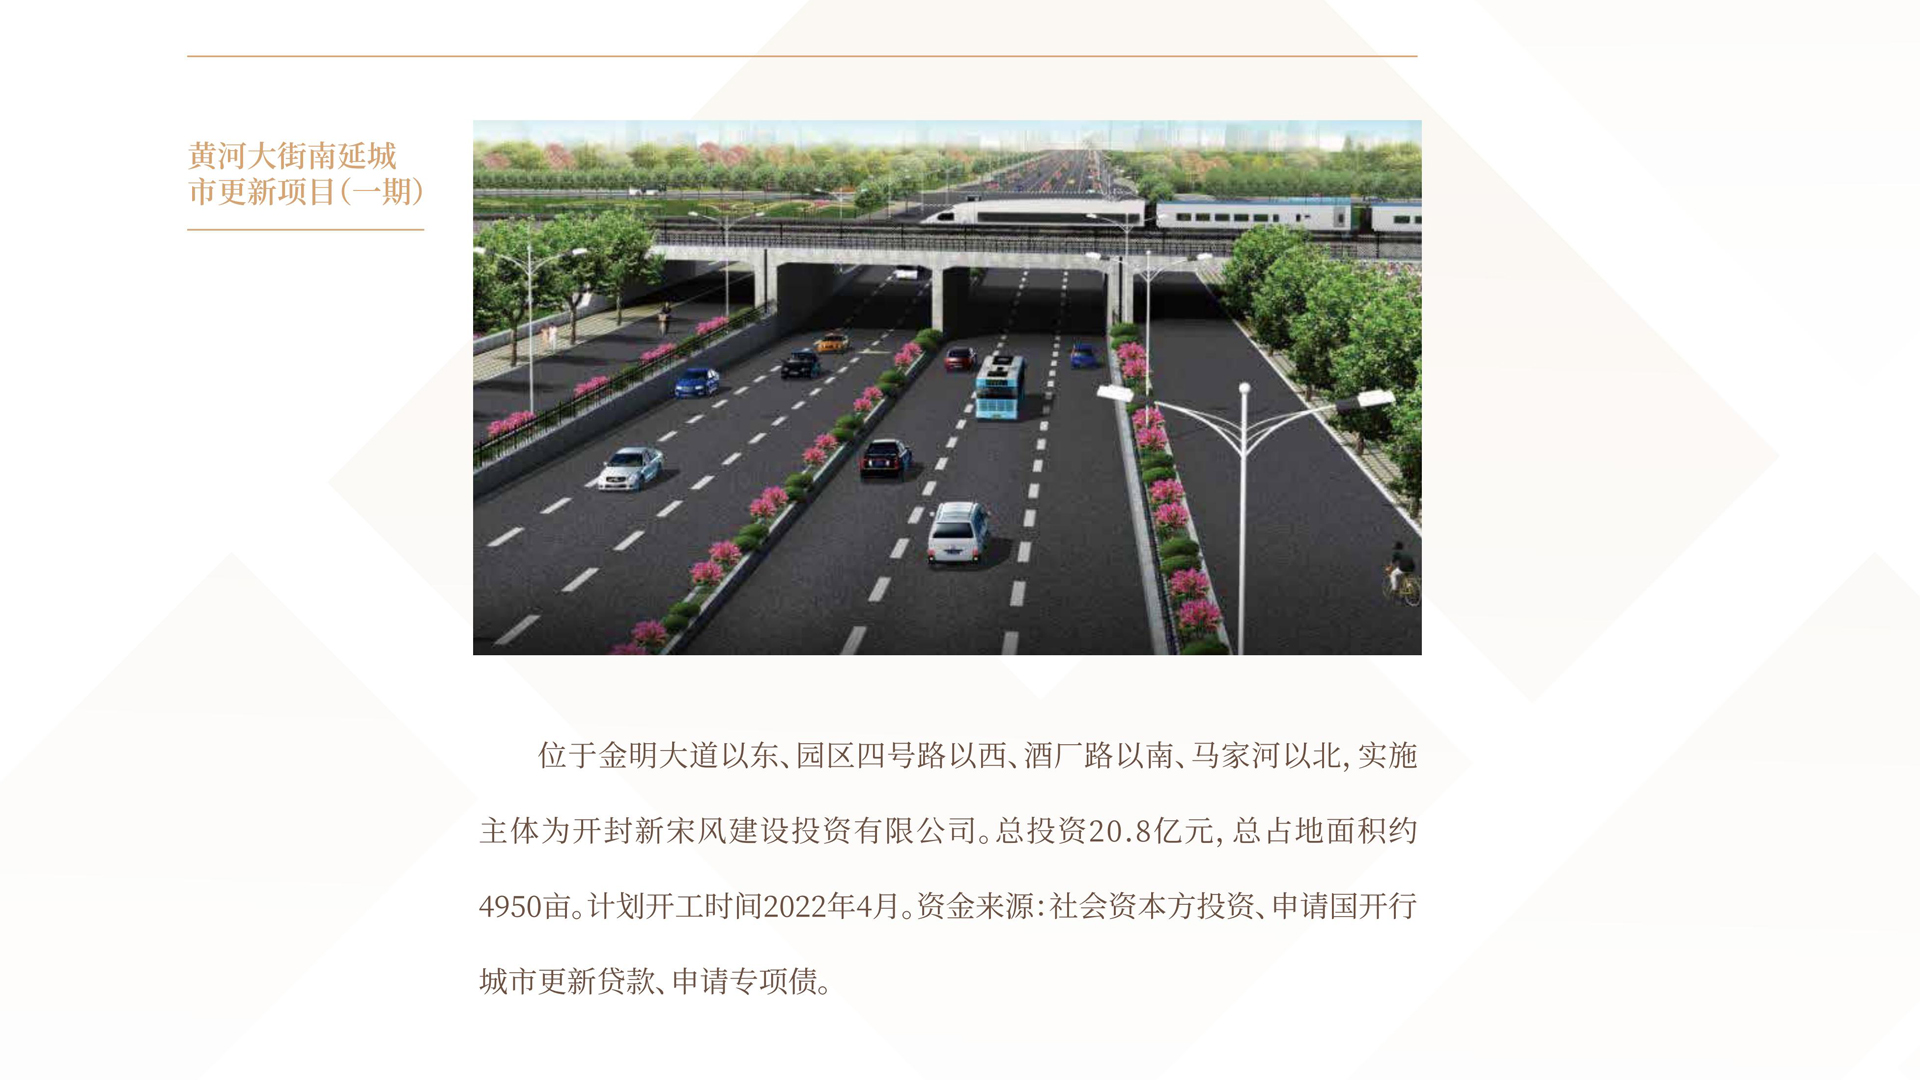 19黃河大街南延城市更新項目（一期）.jpg